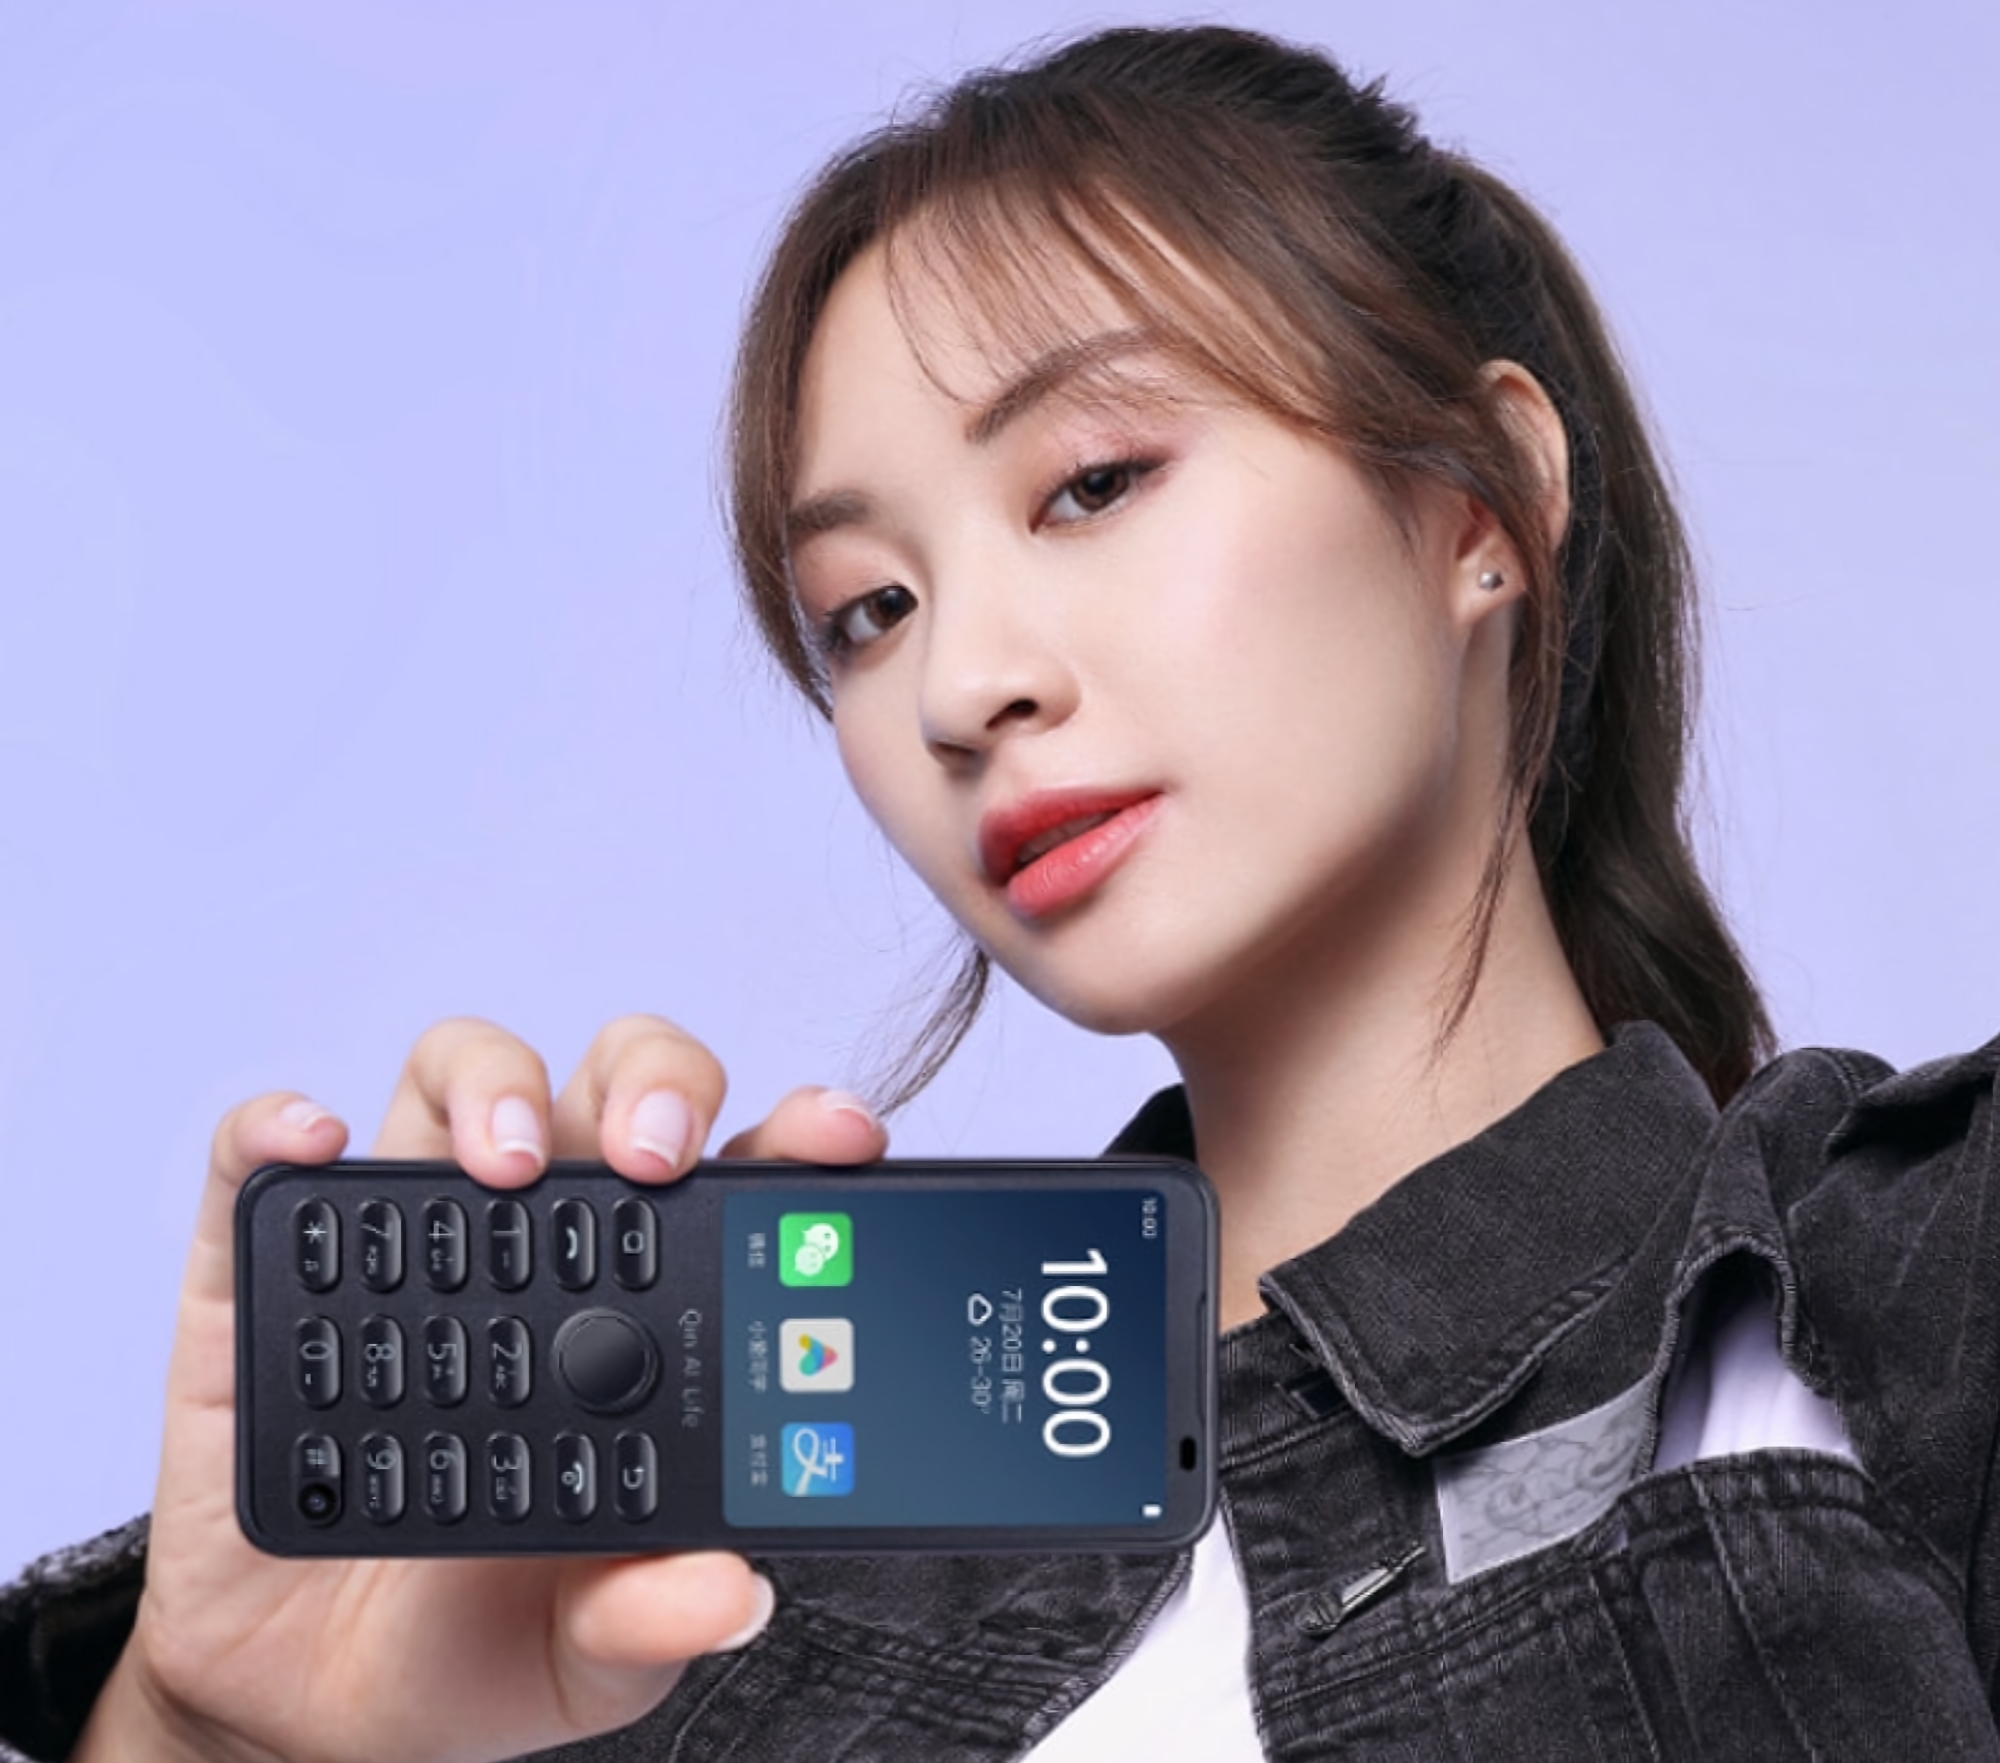 Qin F21 Pro: il telefono a pulsante dell'ecosistema Xiaomi con uno schermo da 2,8 pollici, Wi-Fi, fotocamera selfie e sistema operativo Android a bordo per 89 dollari